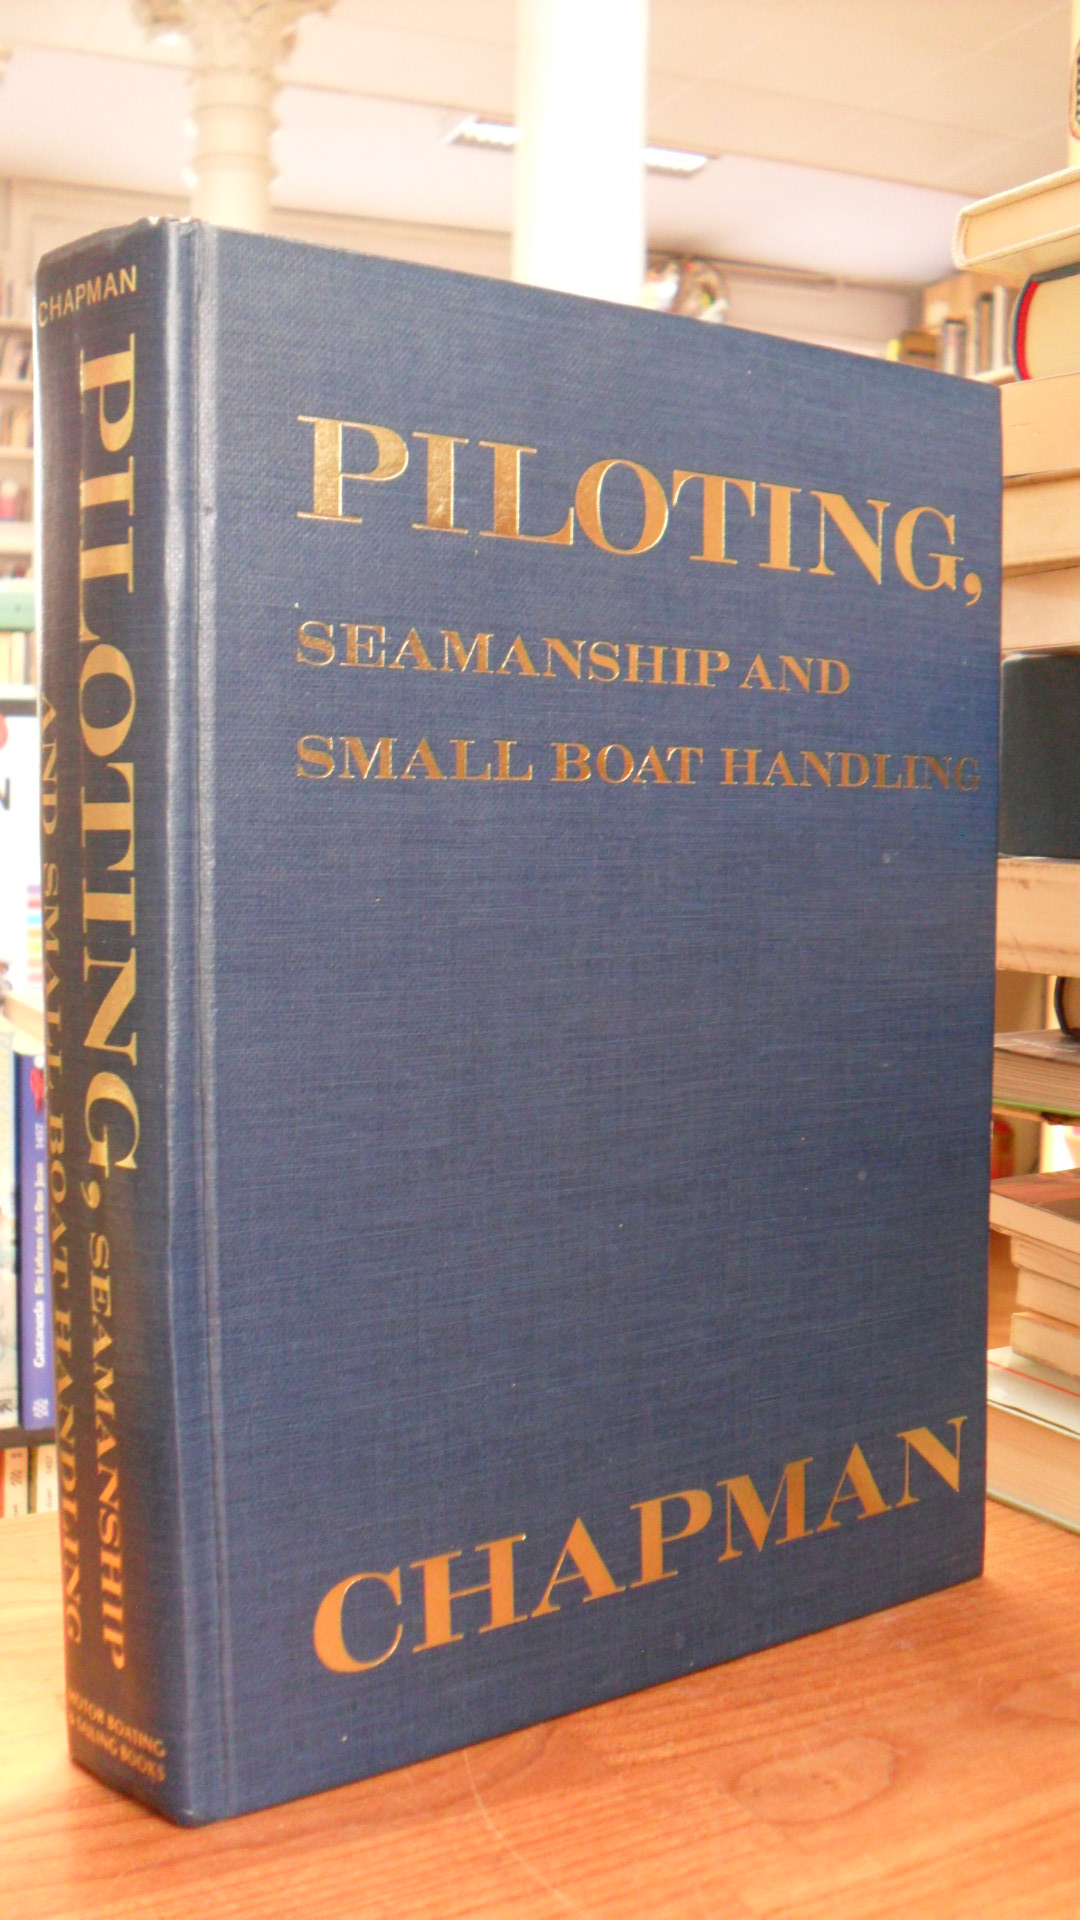 Chapman, Piloting, seamanship and small boat handling,